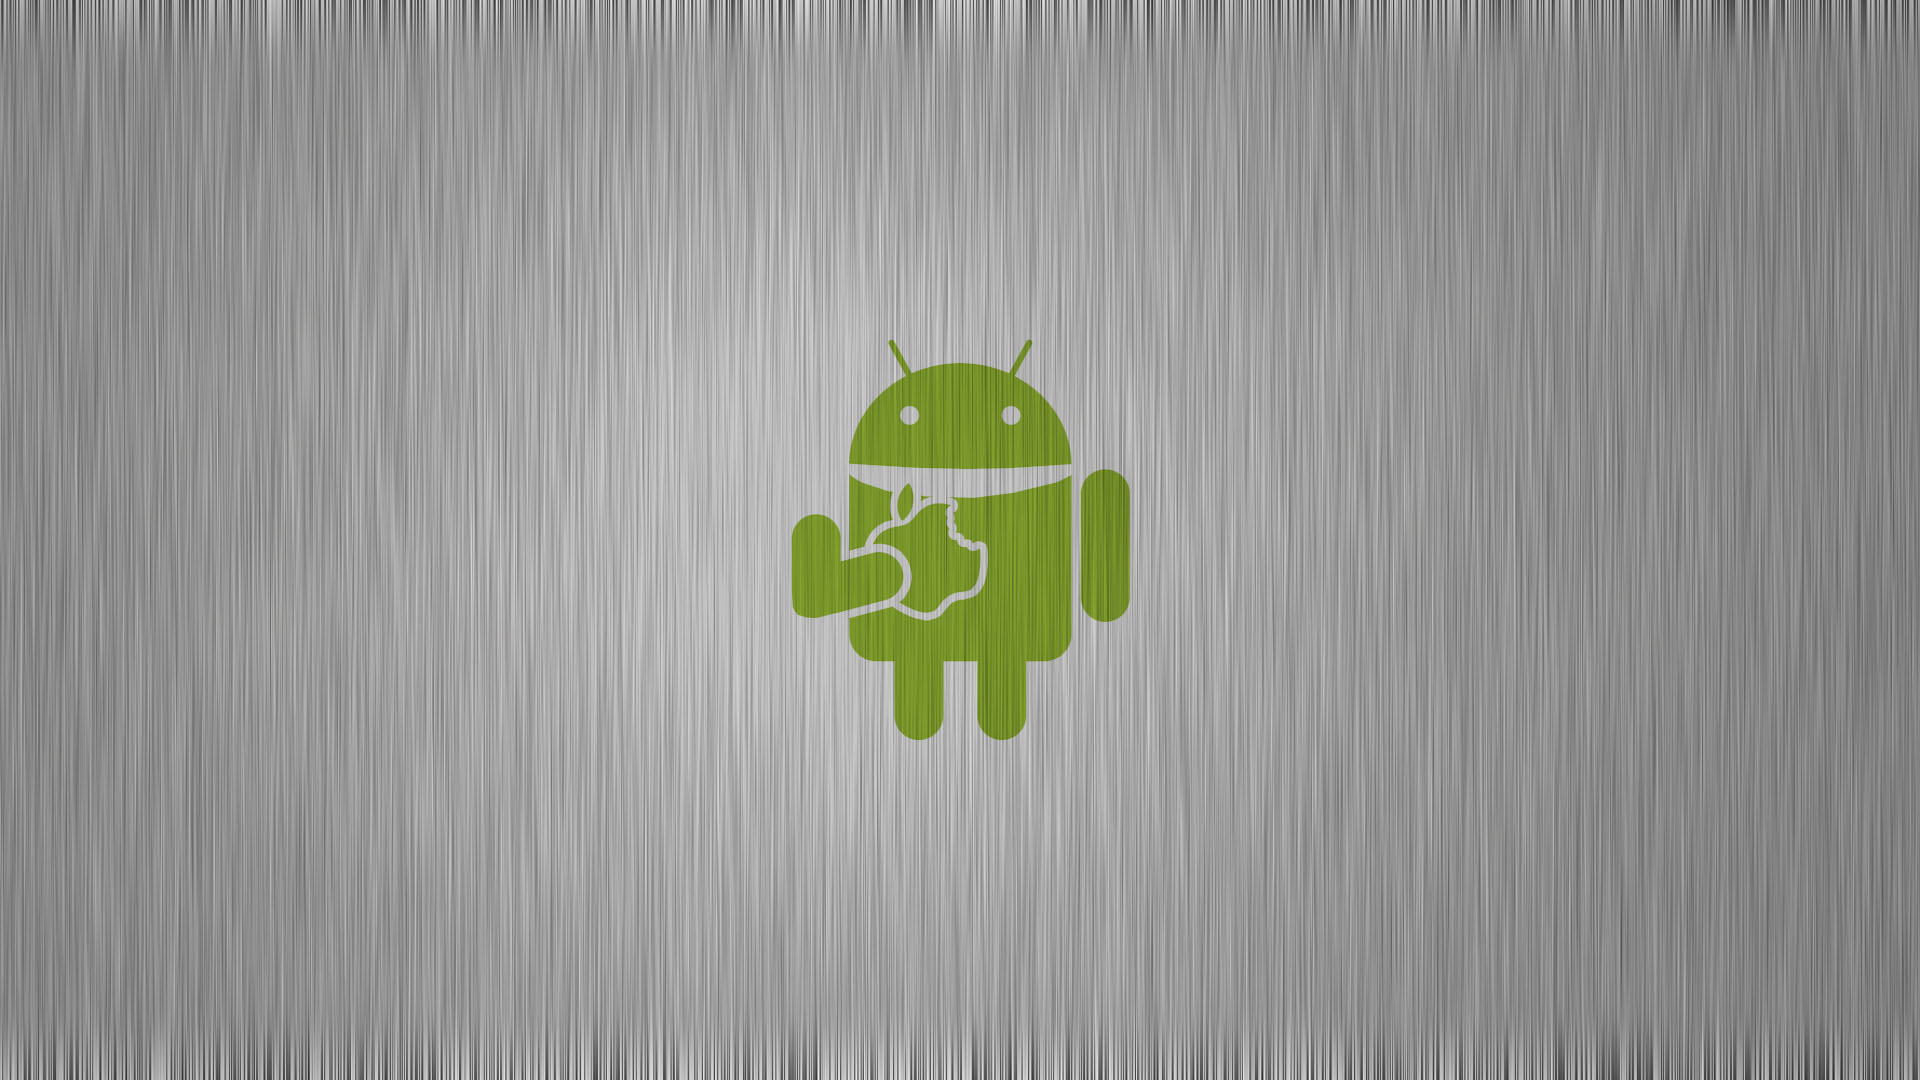 75+] Android Logo Wallpaper - WallpaperSafari